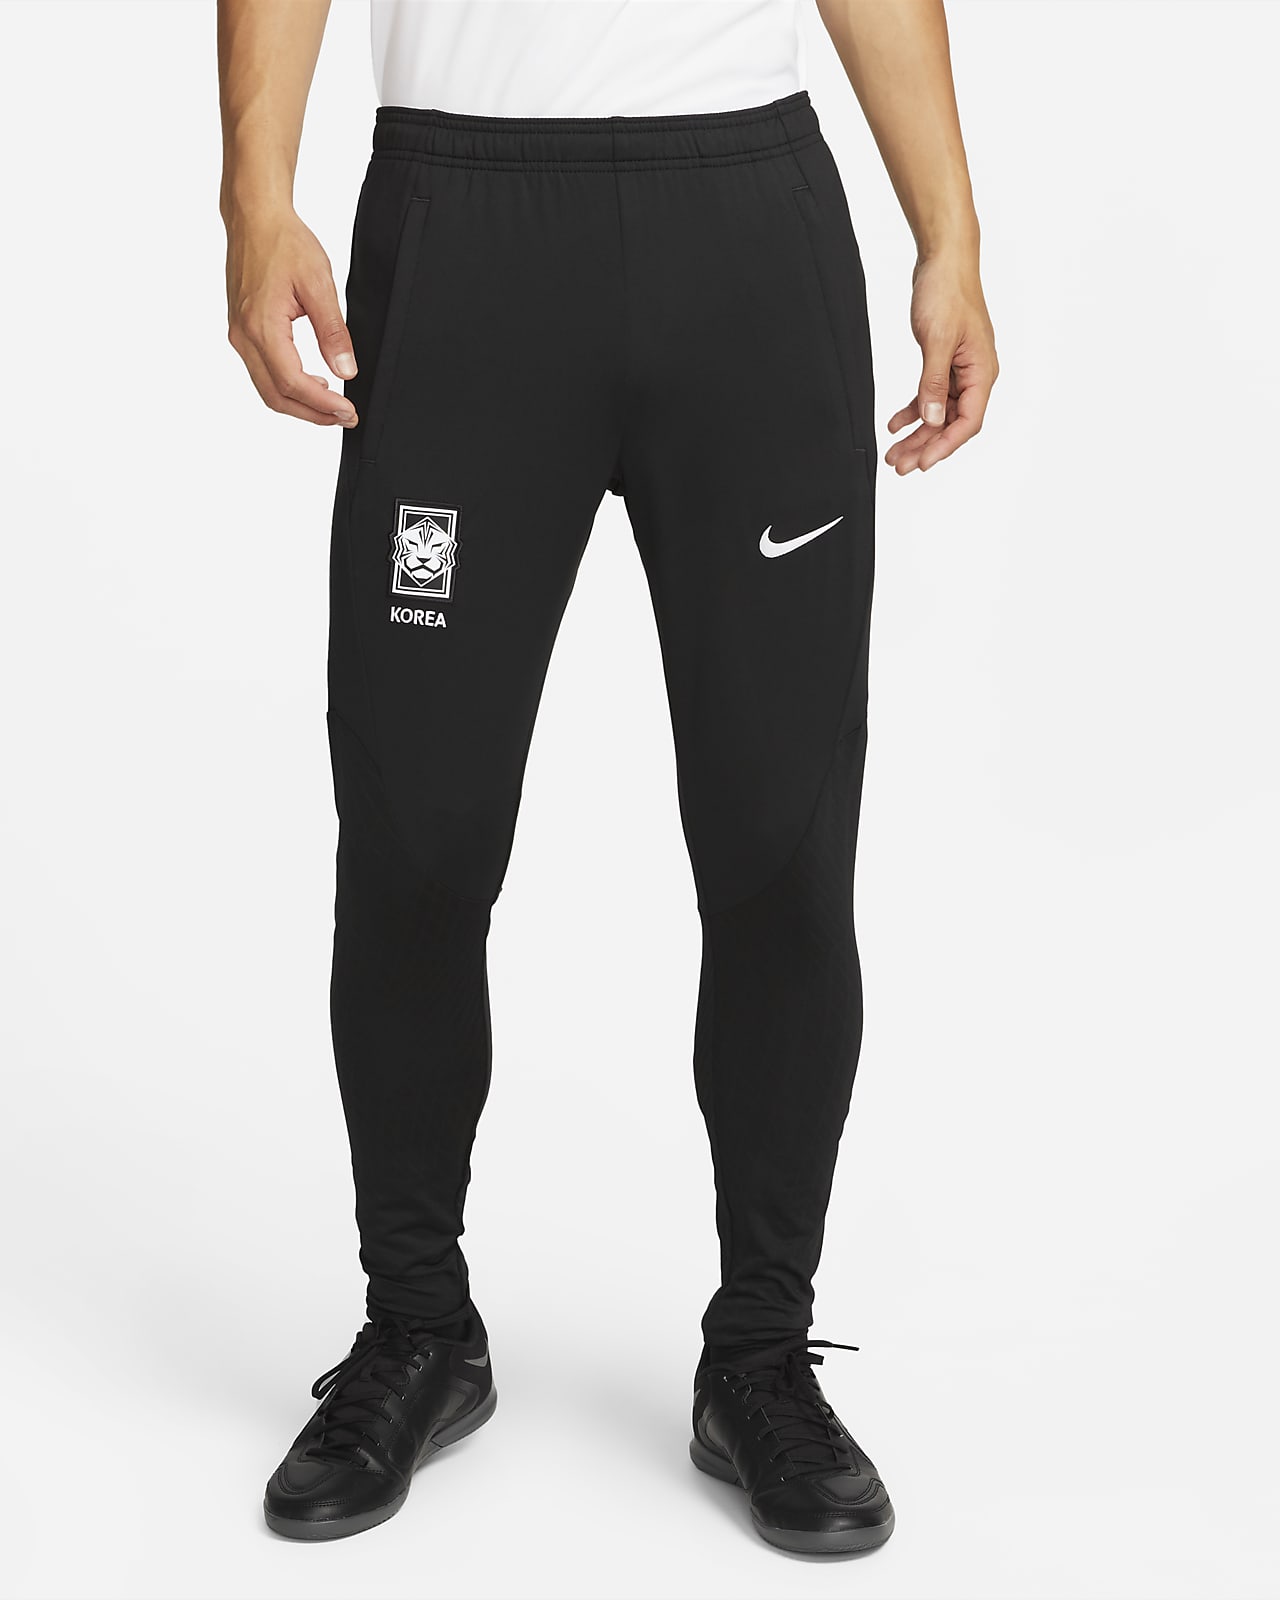 Korea Strike Men's Nike Dri-FIT Knit Soccer Nike.com